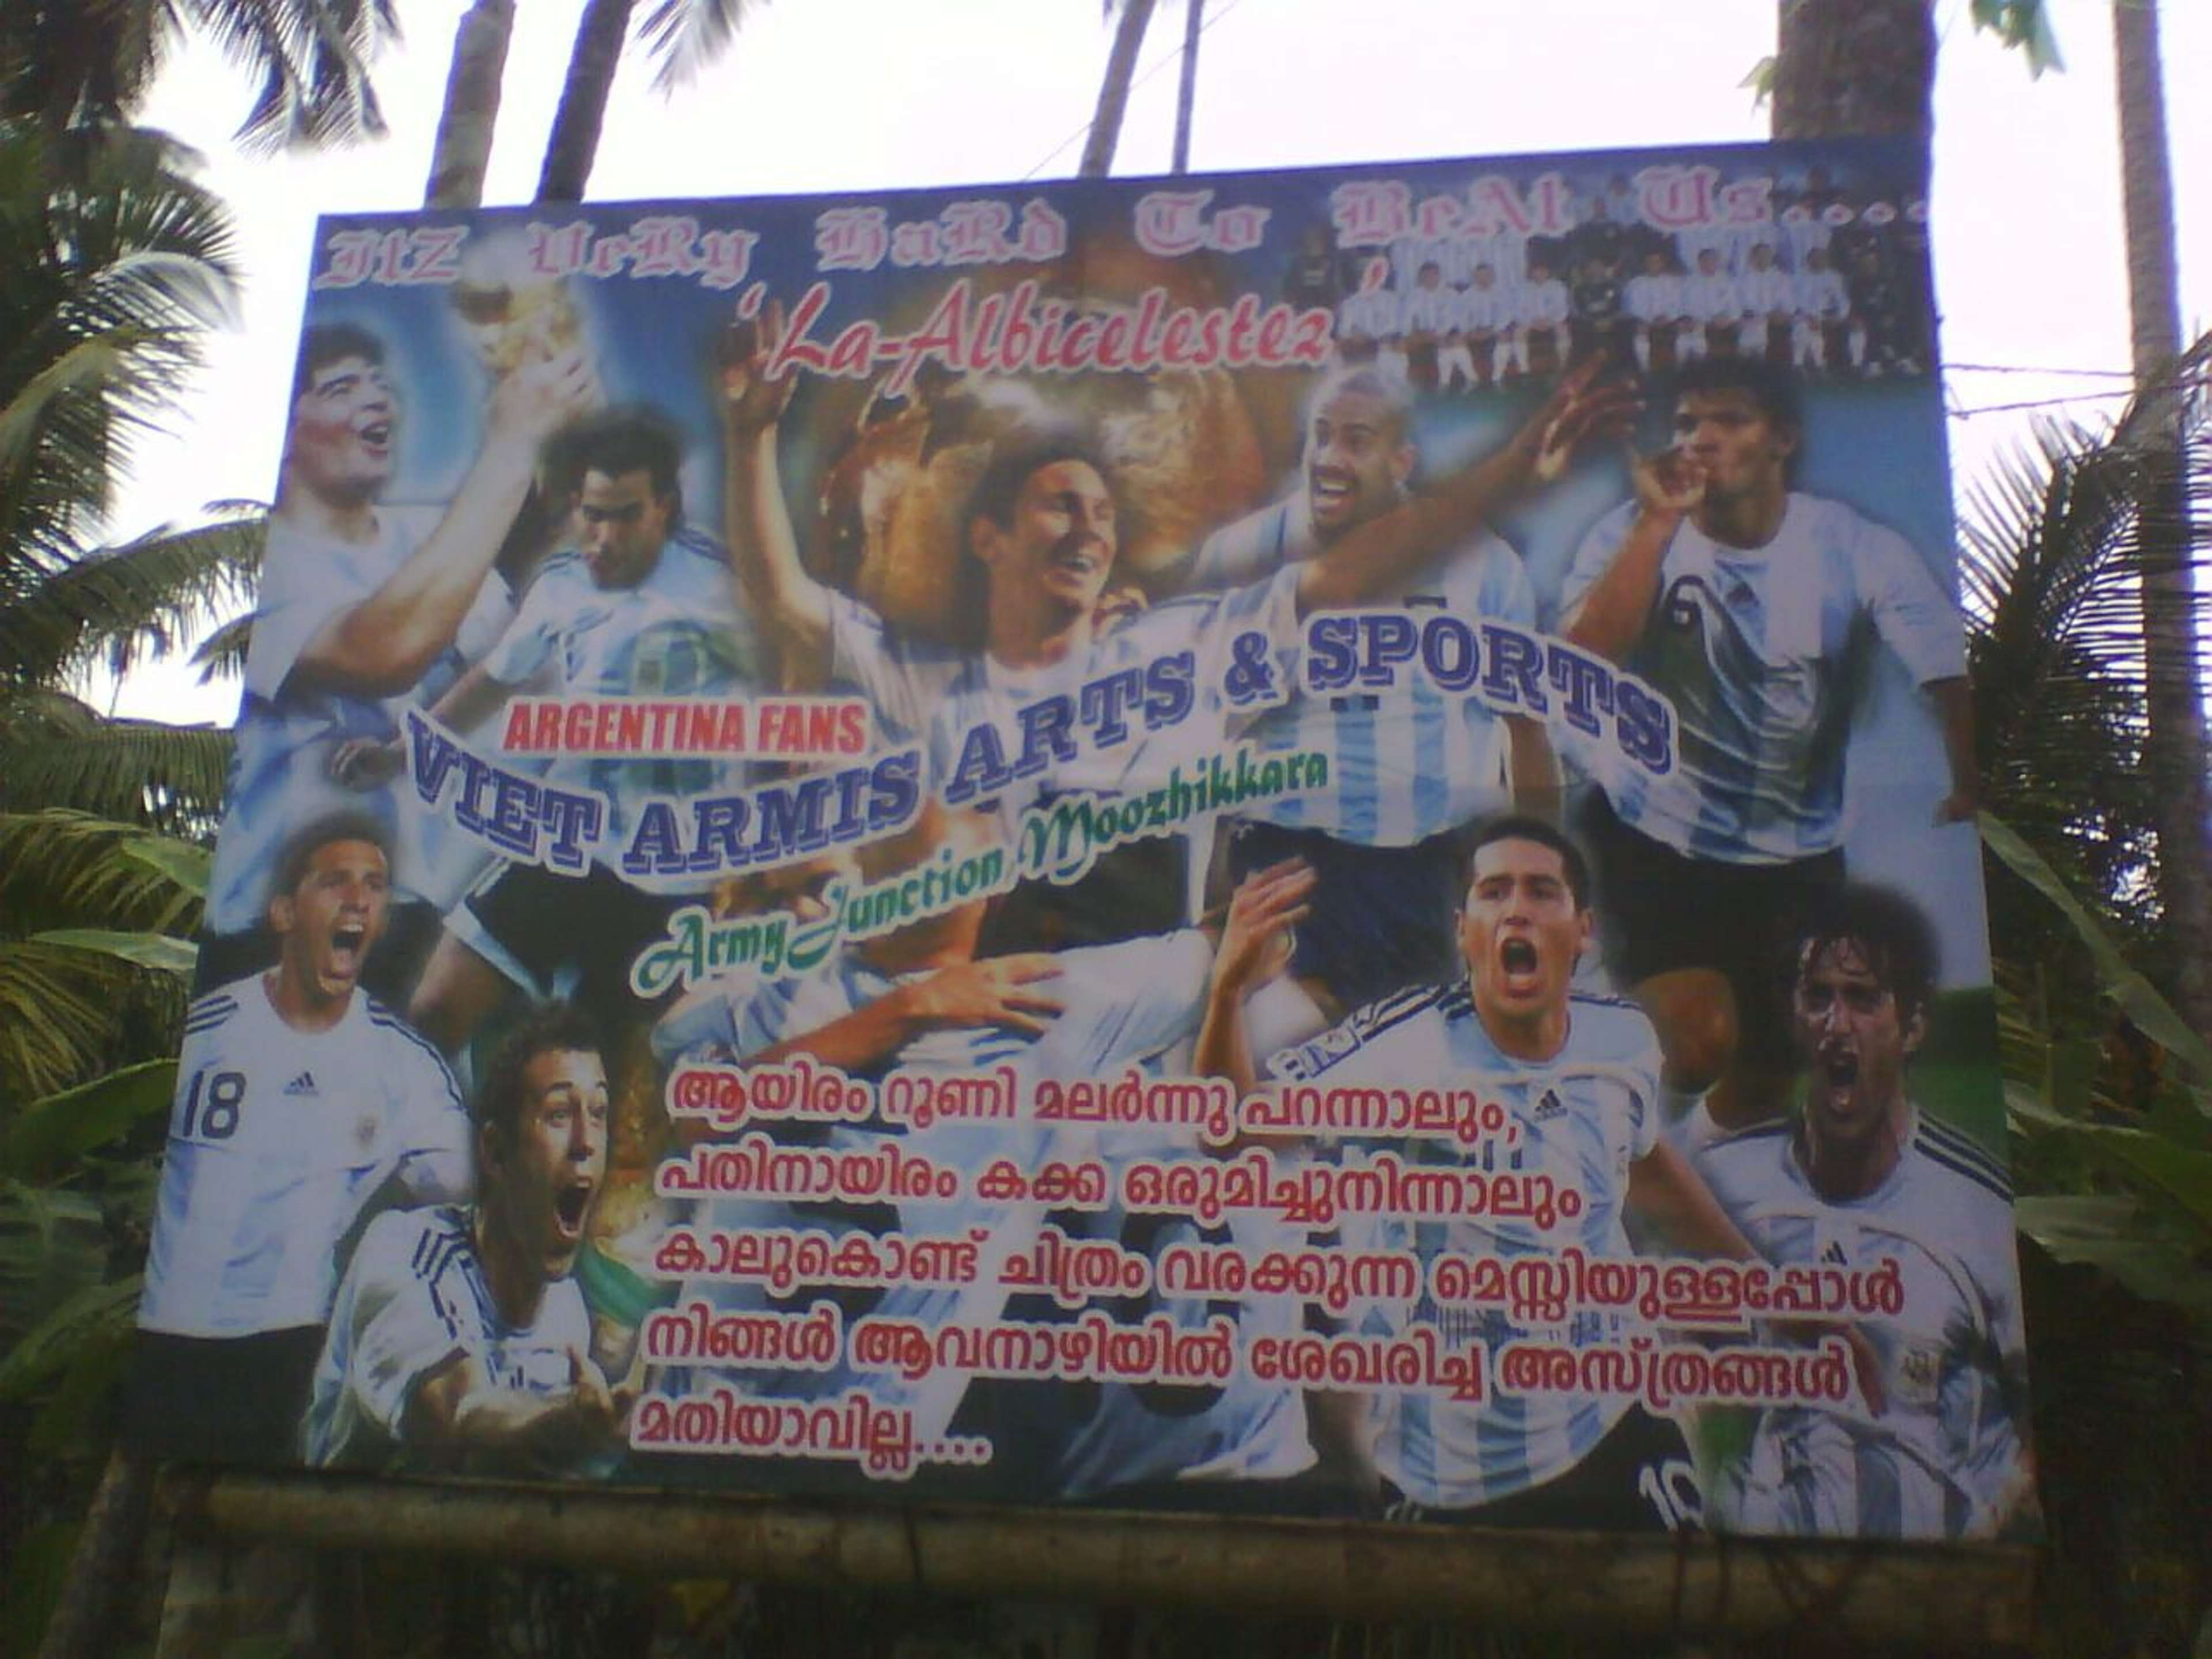 World Cup in Kerala